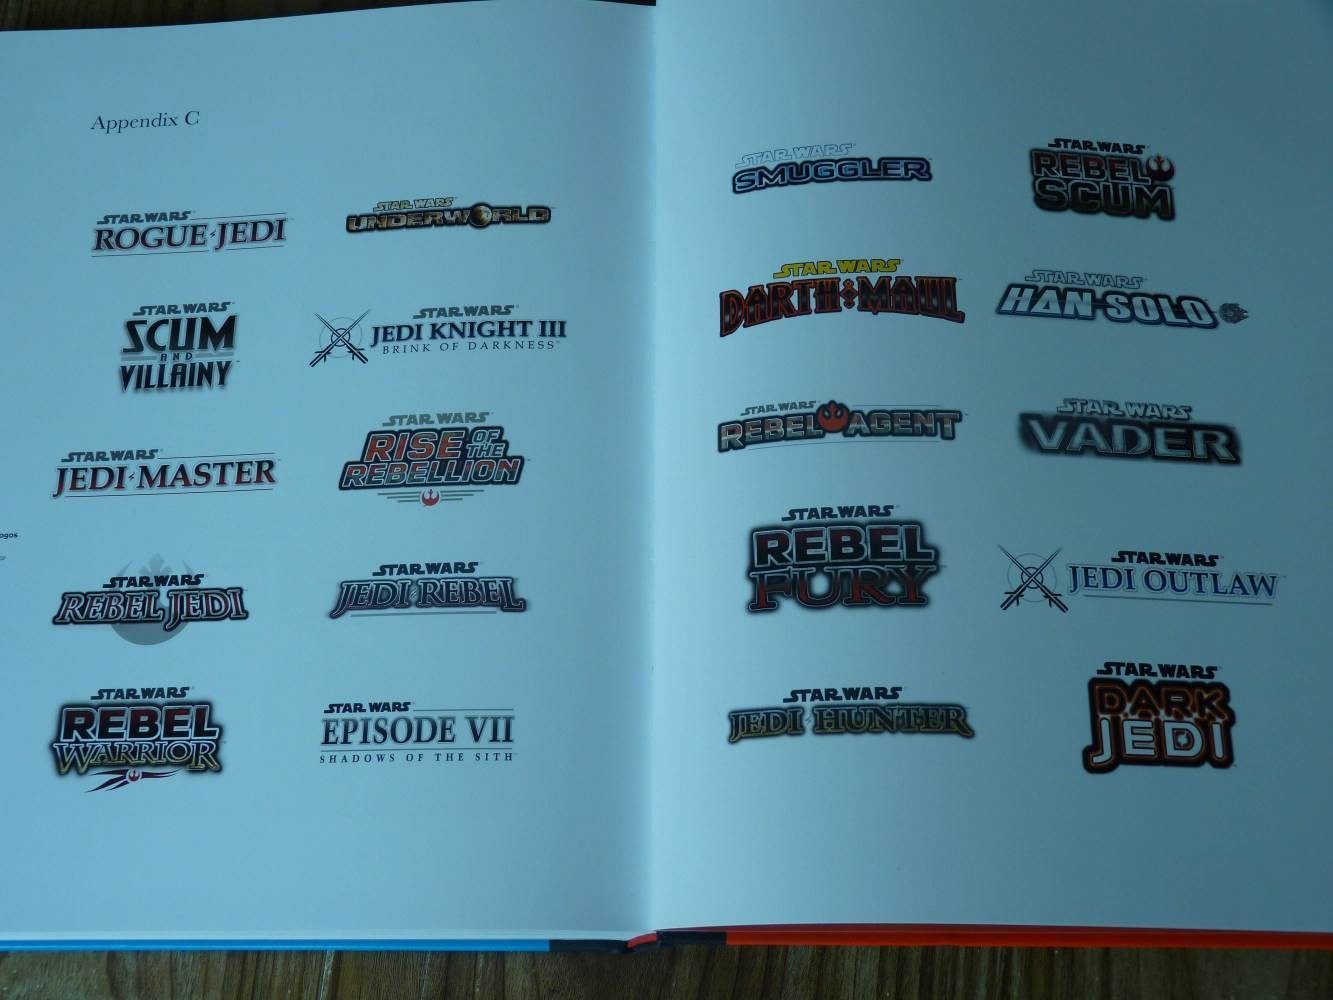 Logotypy z książki Rogue Leaders: The Story of LucasArts pobudzają wyobraźnię. - Wieści ze świata (Star Wars Episode VII: Shadows Of The Sith, Doom, PlayStation VR, Fire Emblem Fates) 25/2/2016 - wiadomość - 2016-02-25